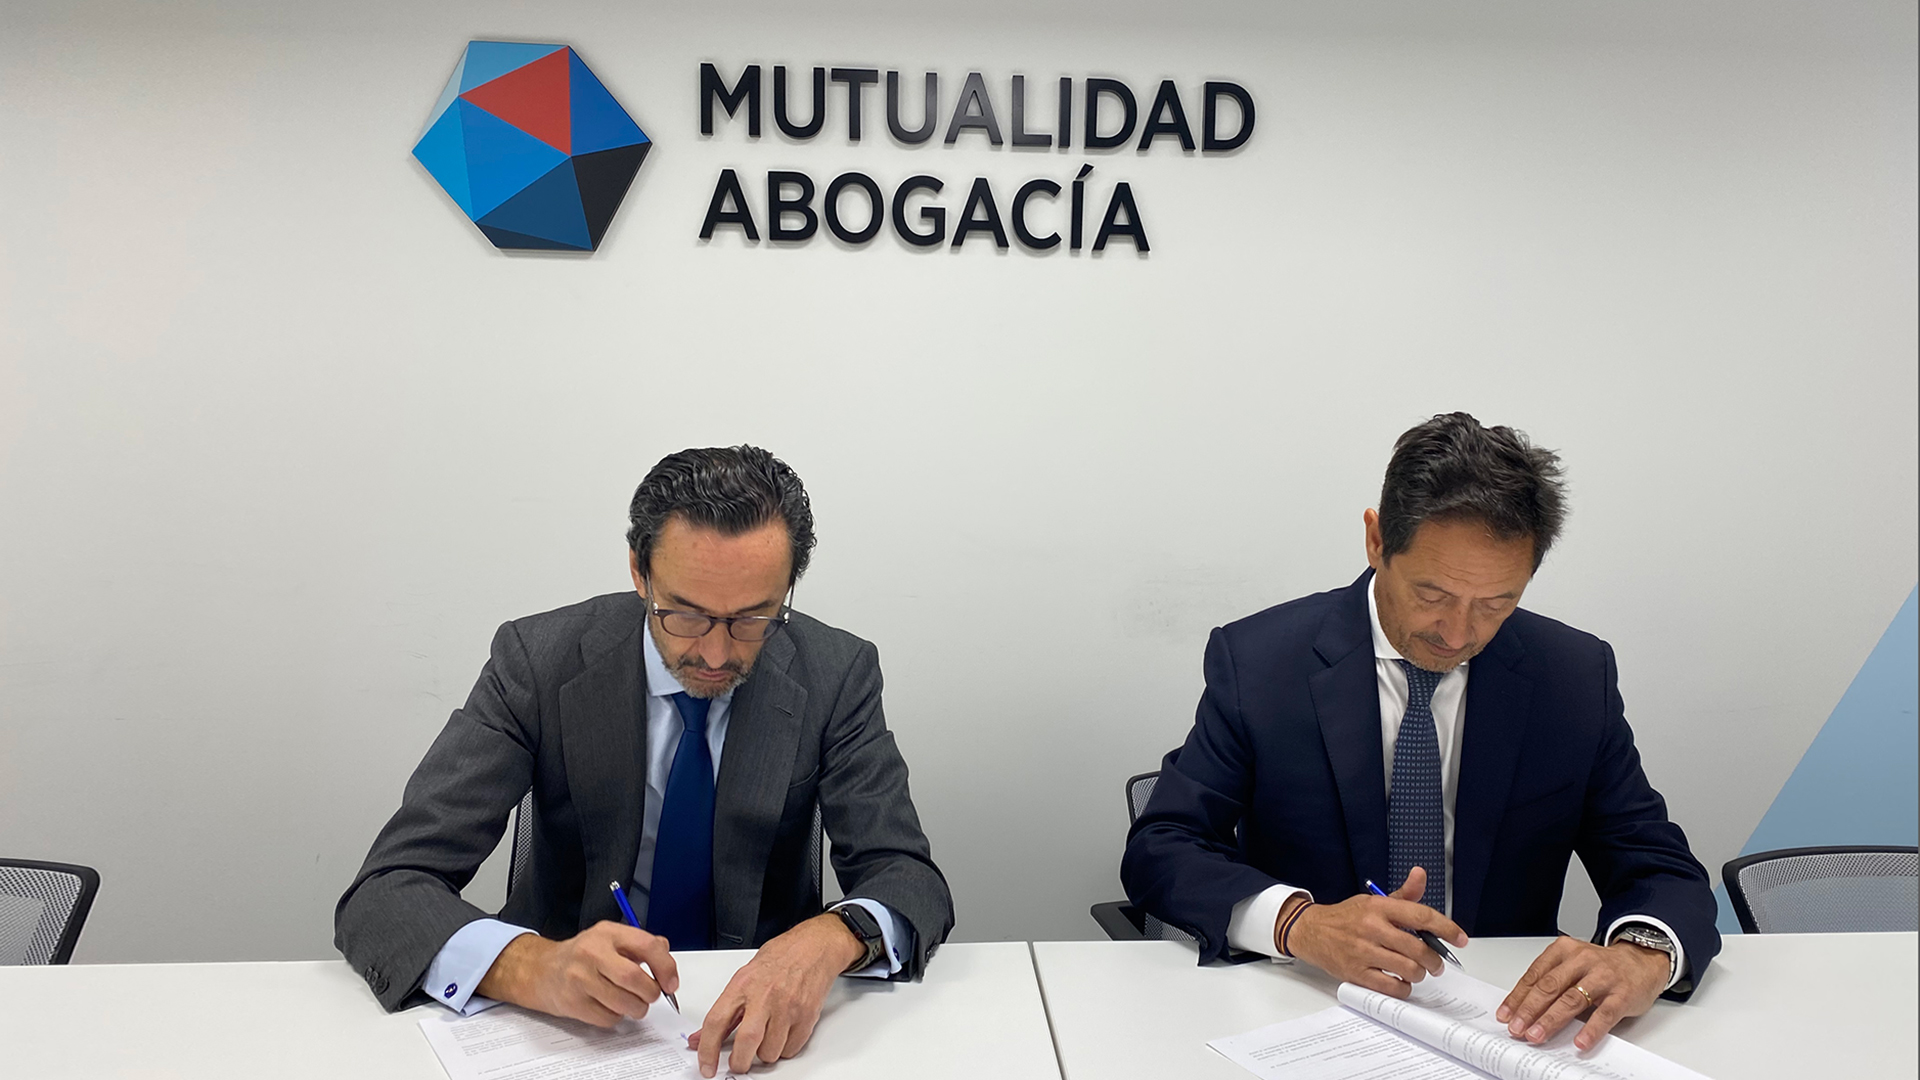 Mutualidad de la Abogacía refuerza su compromiso con el sector legal con la renovación de su alianza con Inkietos - img 1